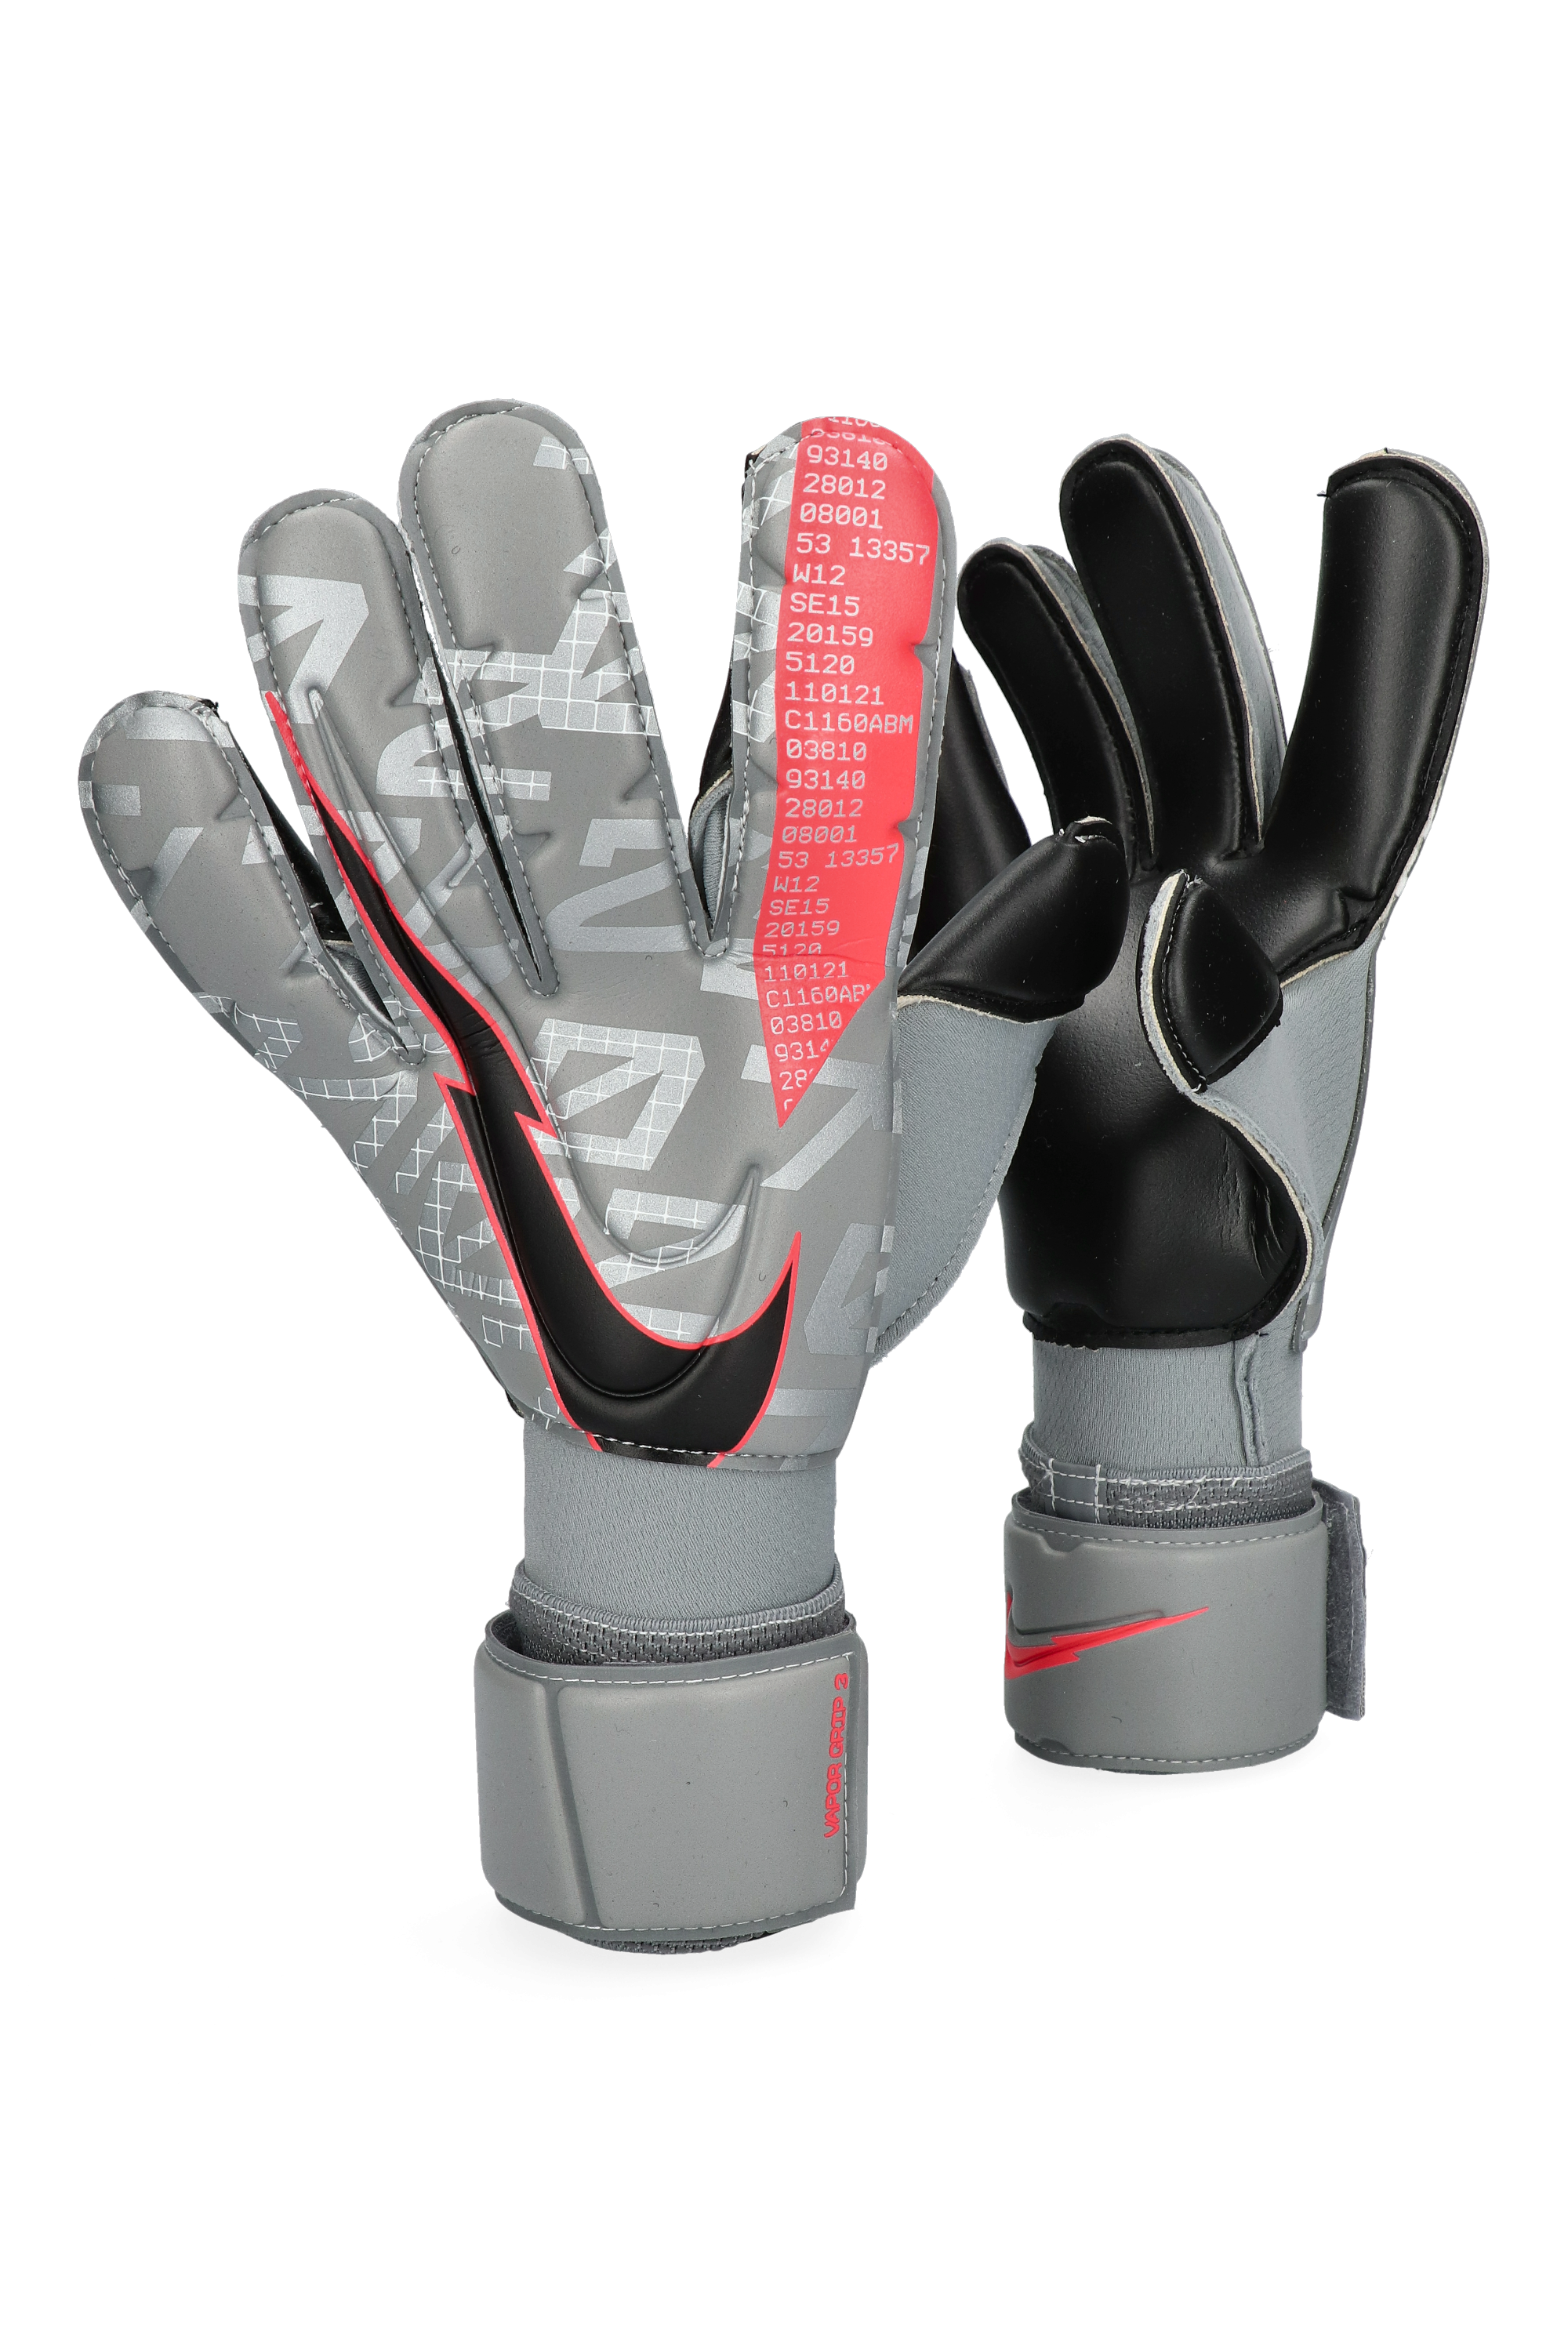 nike vapor grip 3 goalkeeper gloves